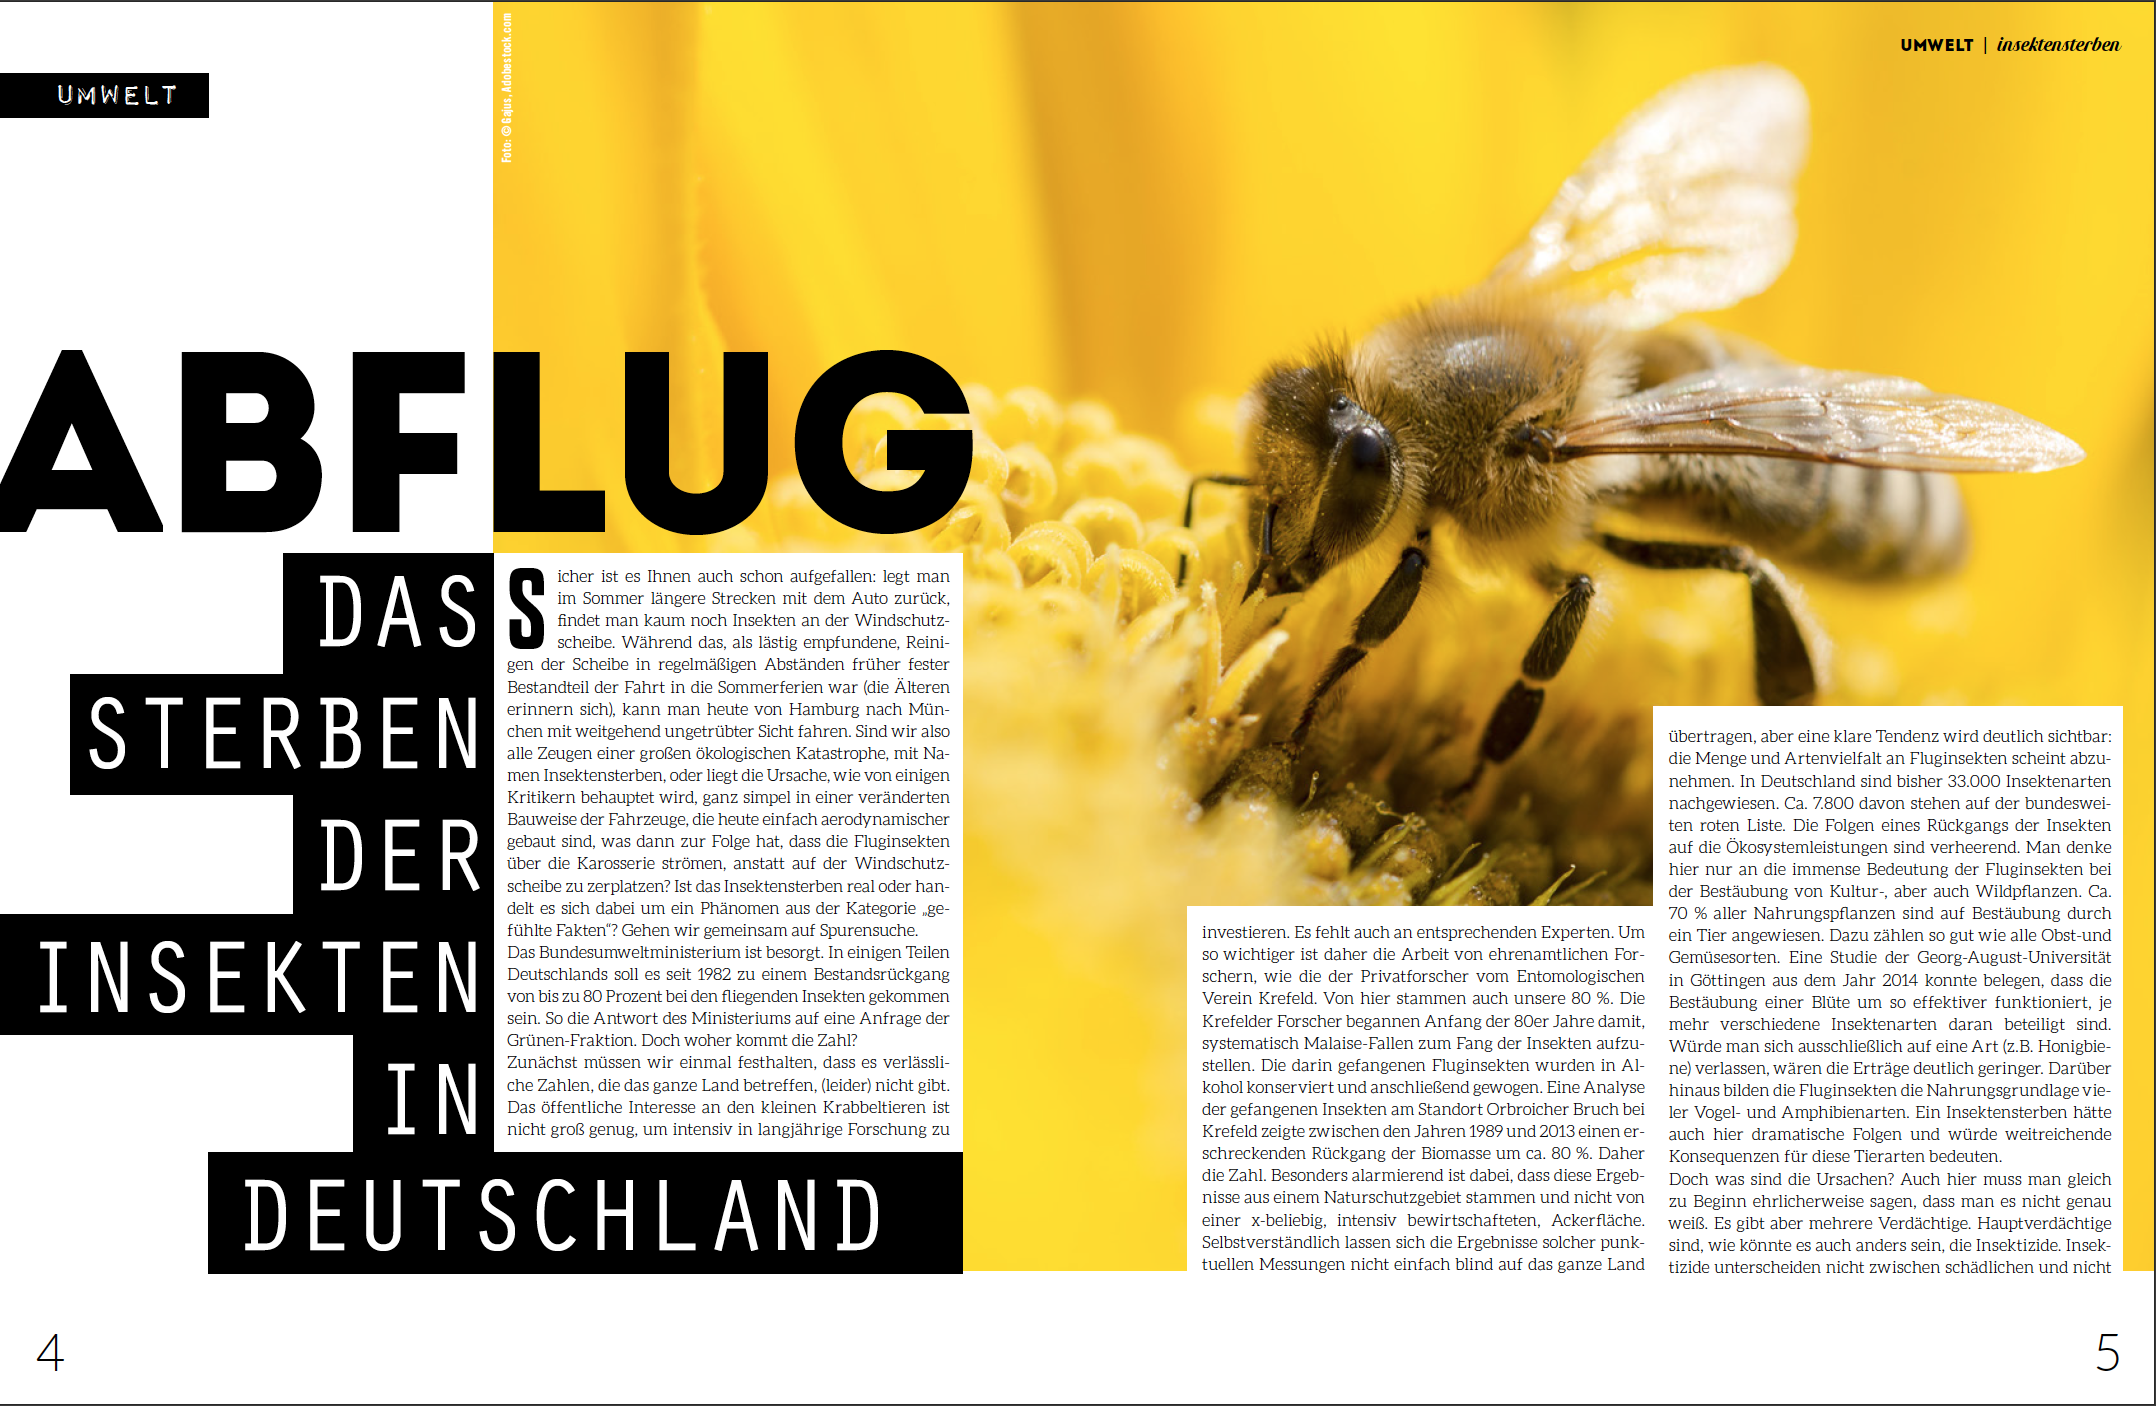 Das große Bienensterben im Welt Vegan Magazin